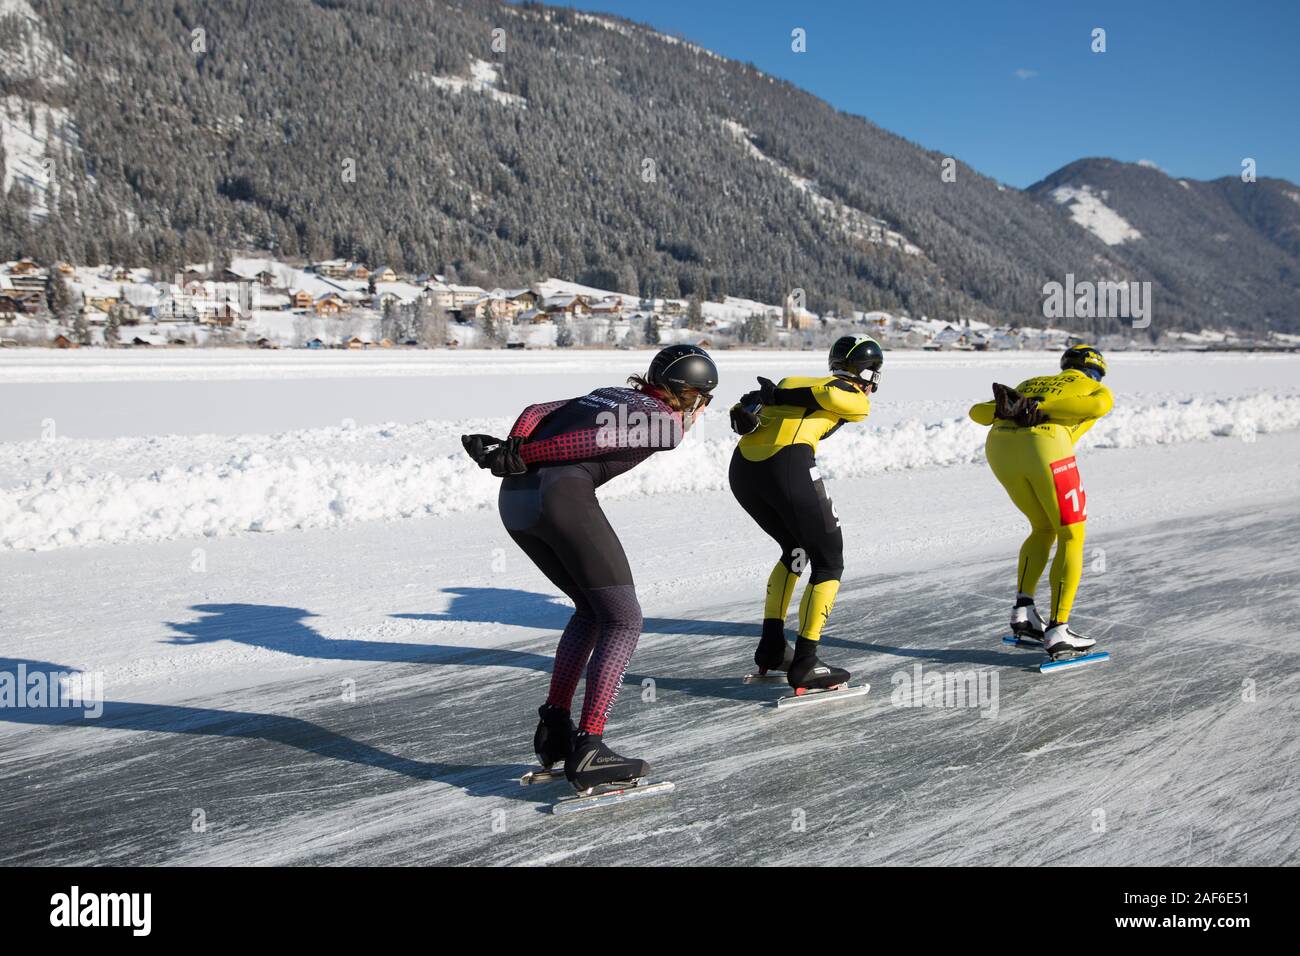 Patinar sobre hielo en el lago, en un hermoso paisaje de invierno. Maratón campeonato hielo patinaje de velocidad sobre hielo natural, lago Weissensee, Austria Foto de stock